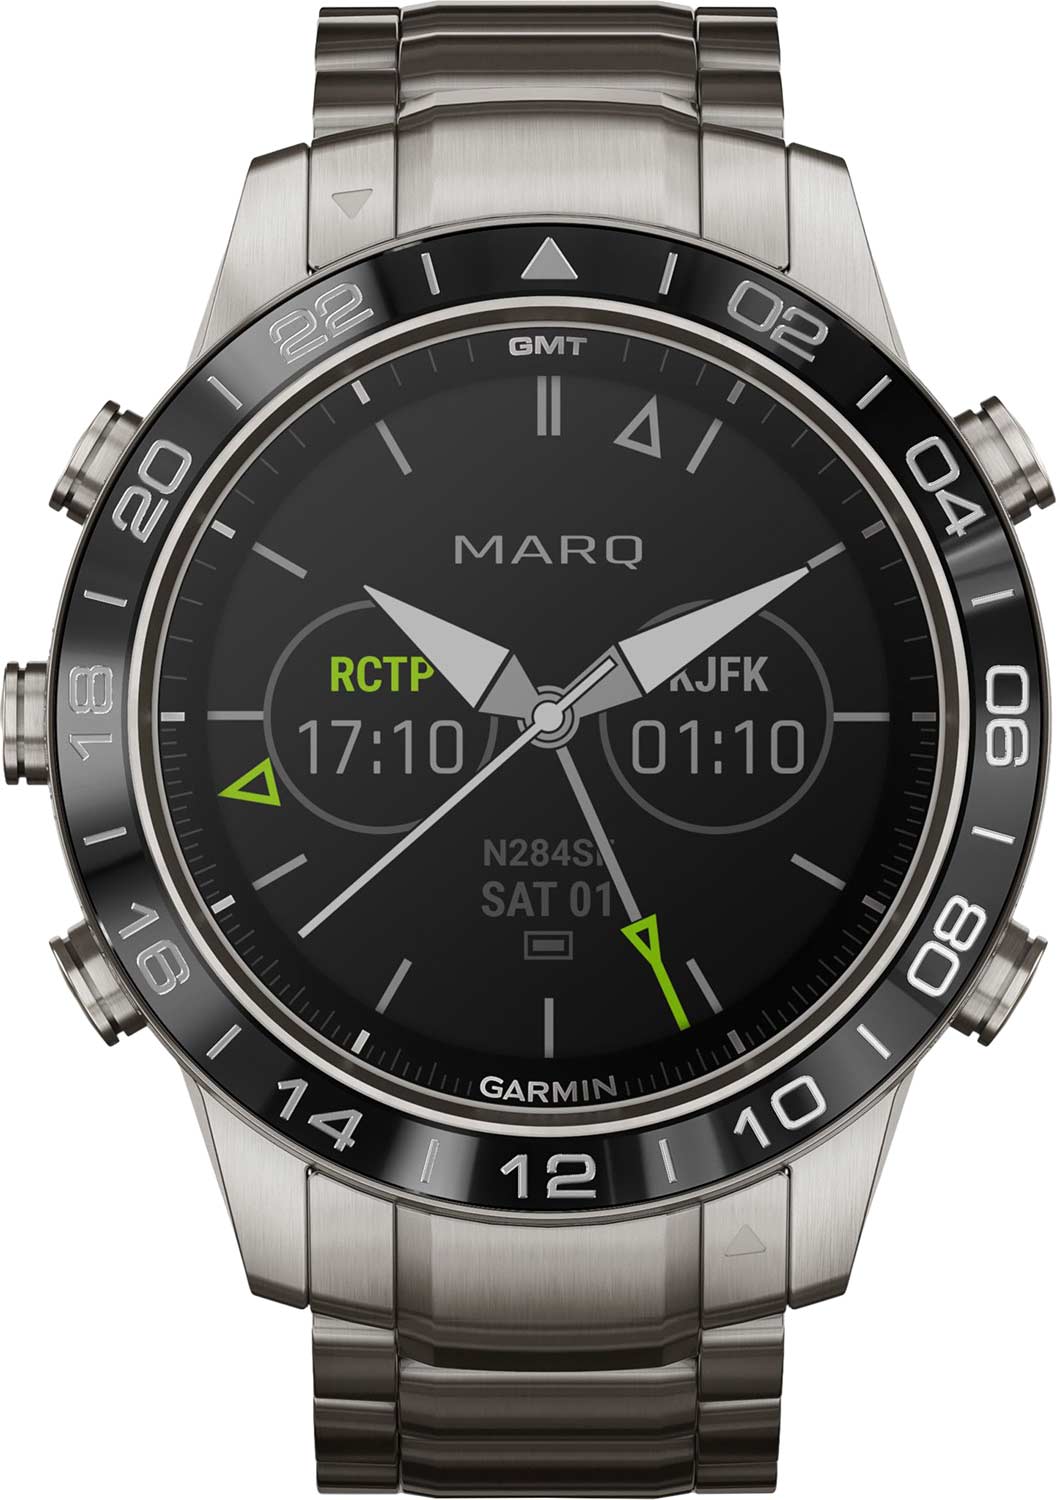 Спортивные титановые наручные часы Garmin MARQ Aviator 010-02006-04